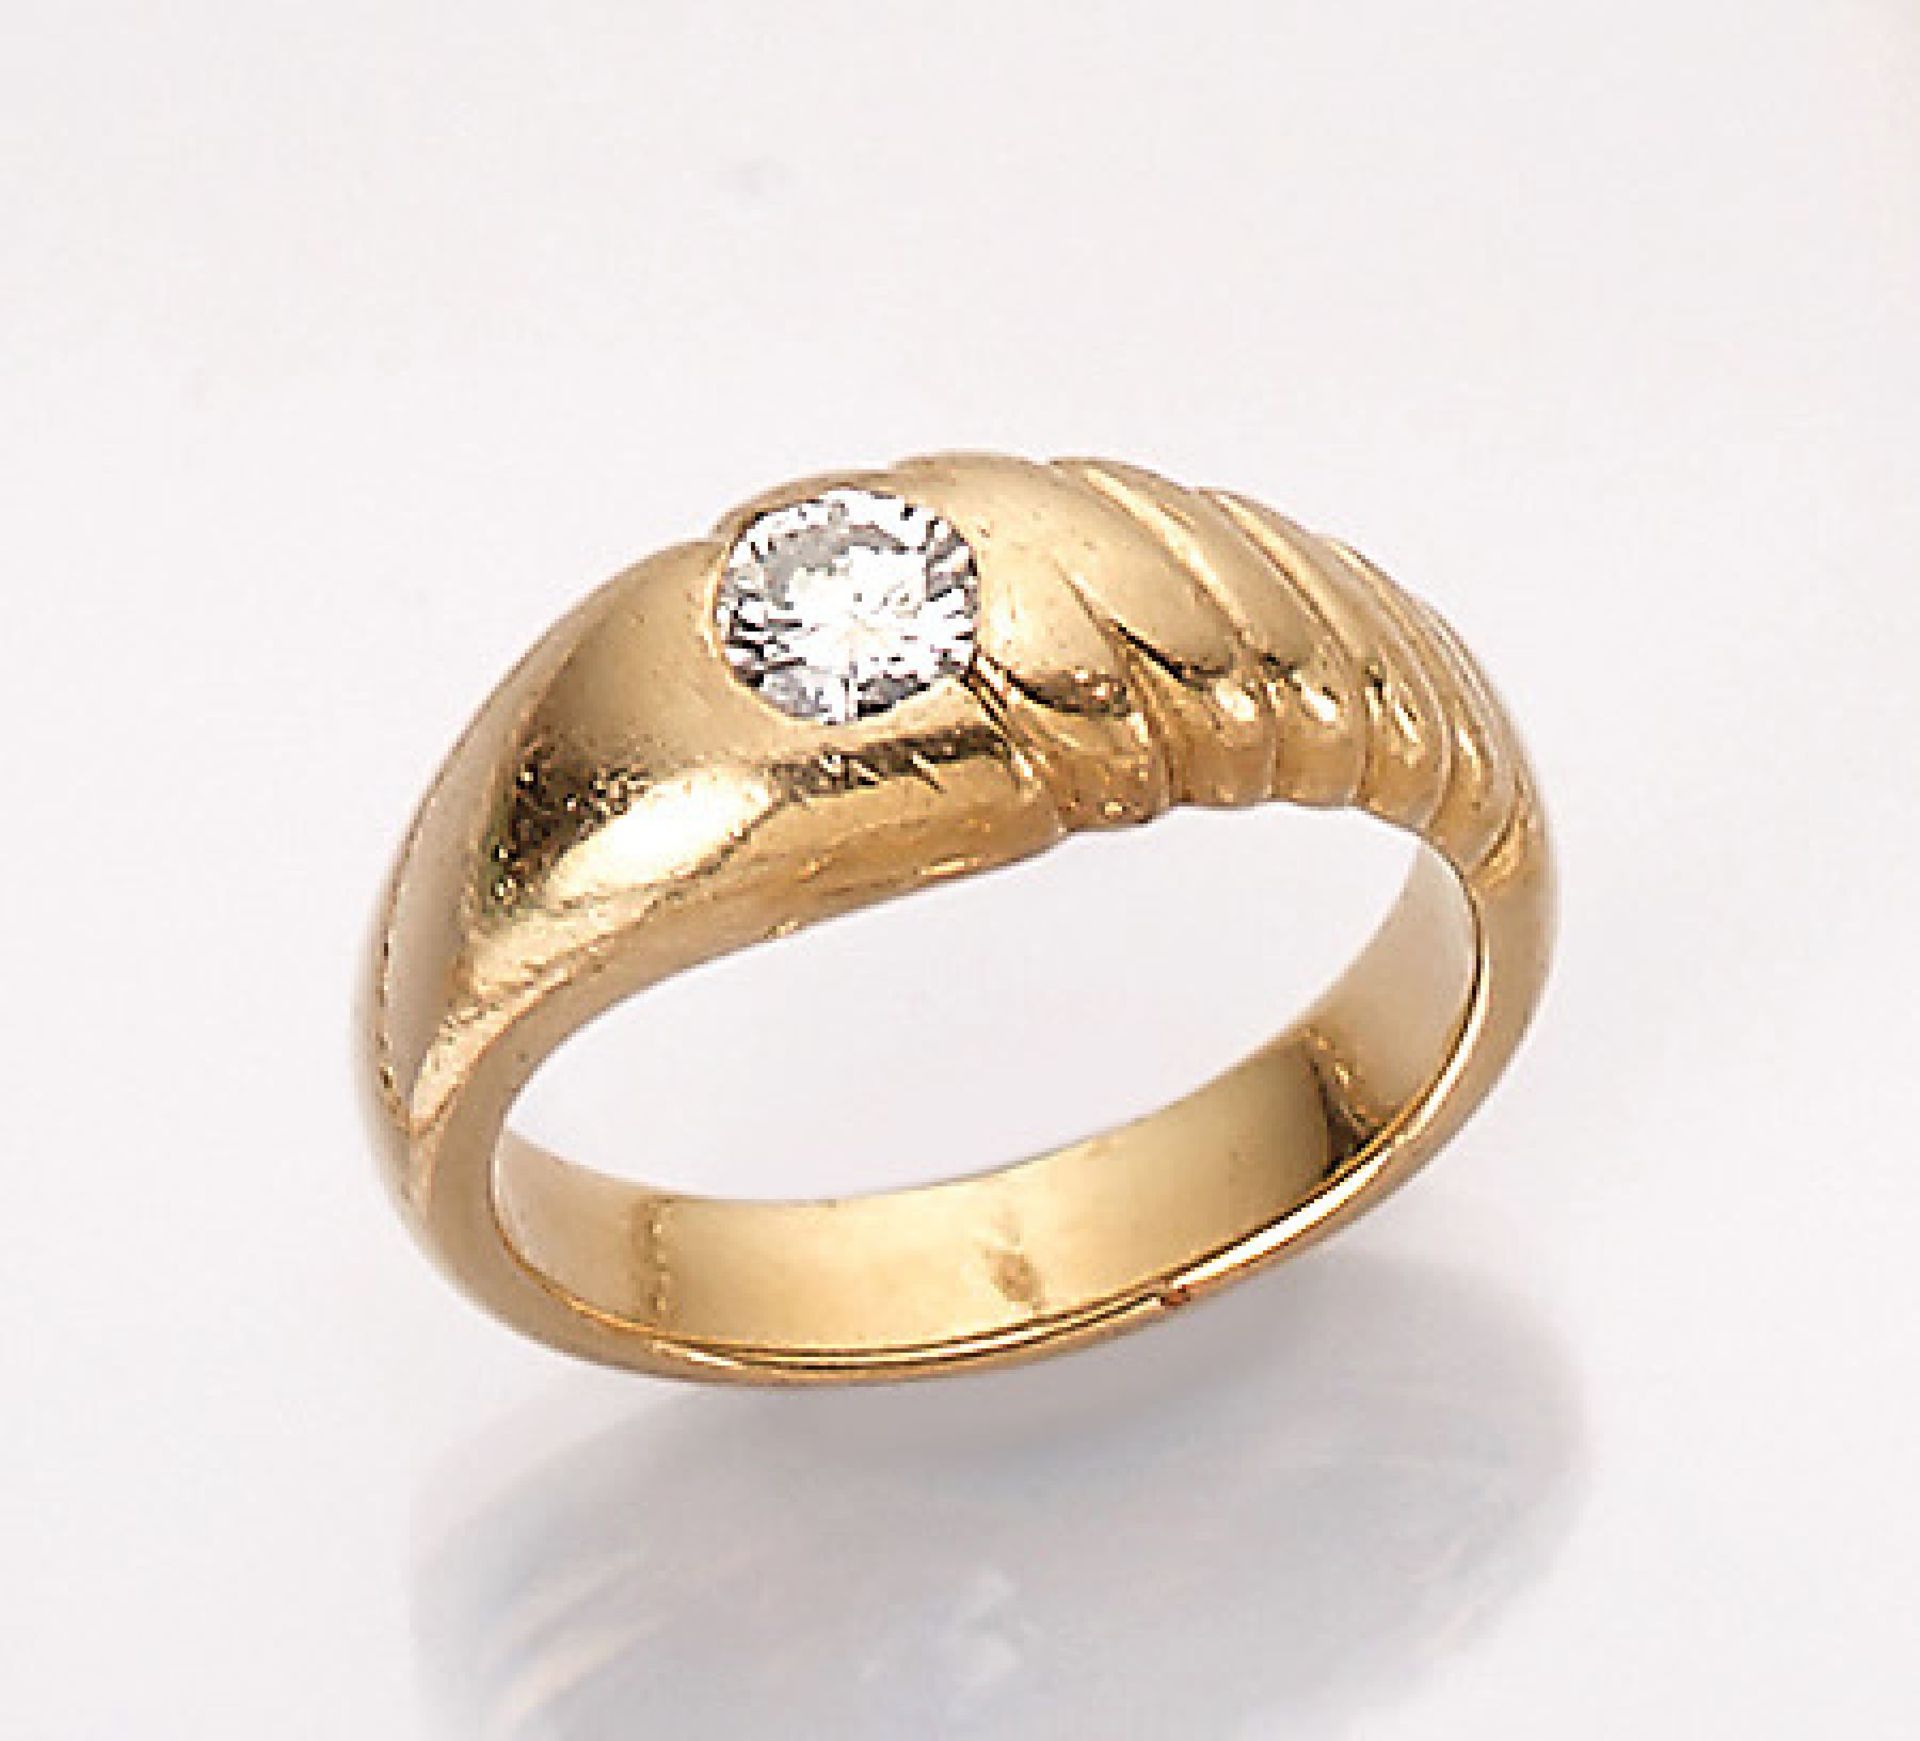 18 kt Gold Ring mit Brillant, GG 750/000, ca. 14.5 g, Diamant ca. 0.76 ct Weiß/p1 (beh.), grav.,